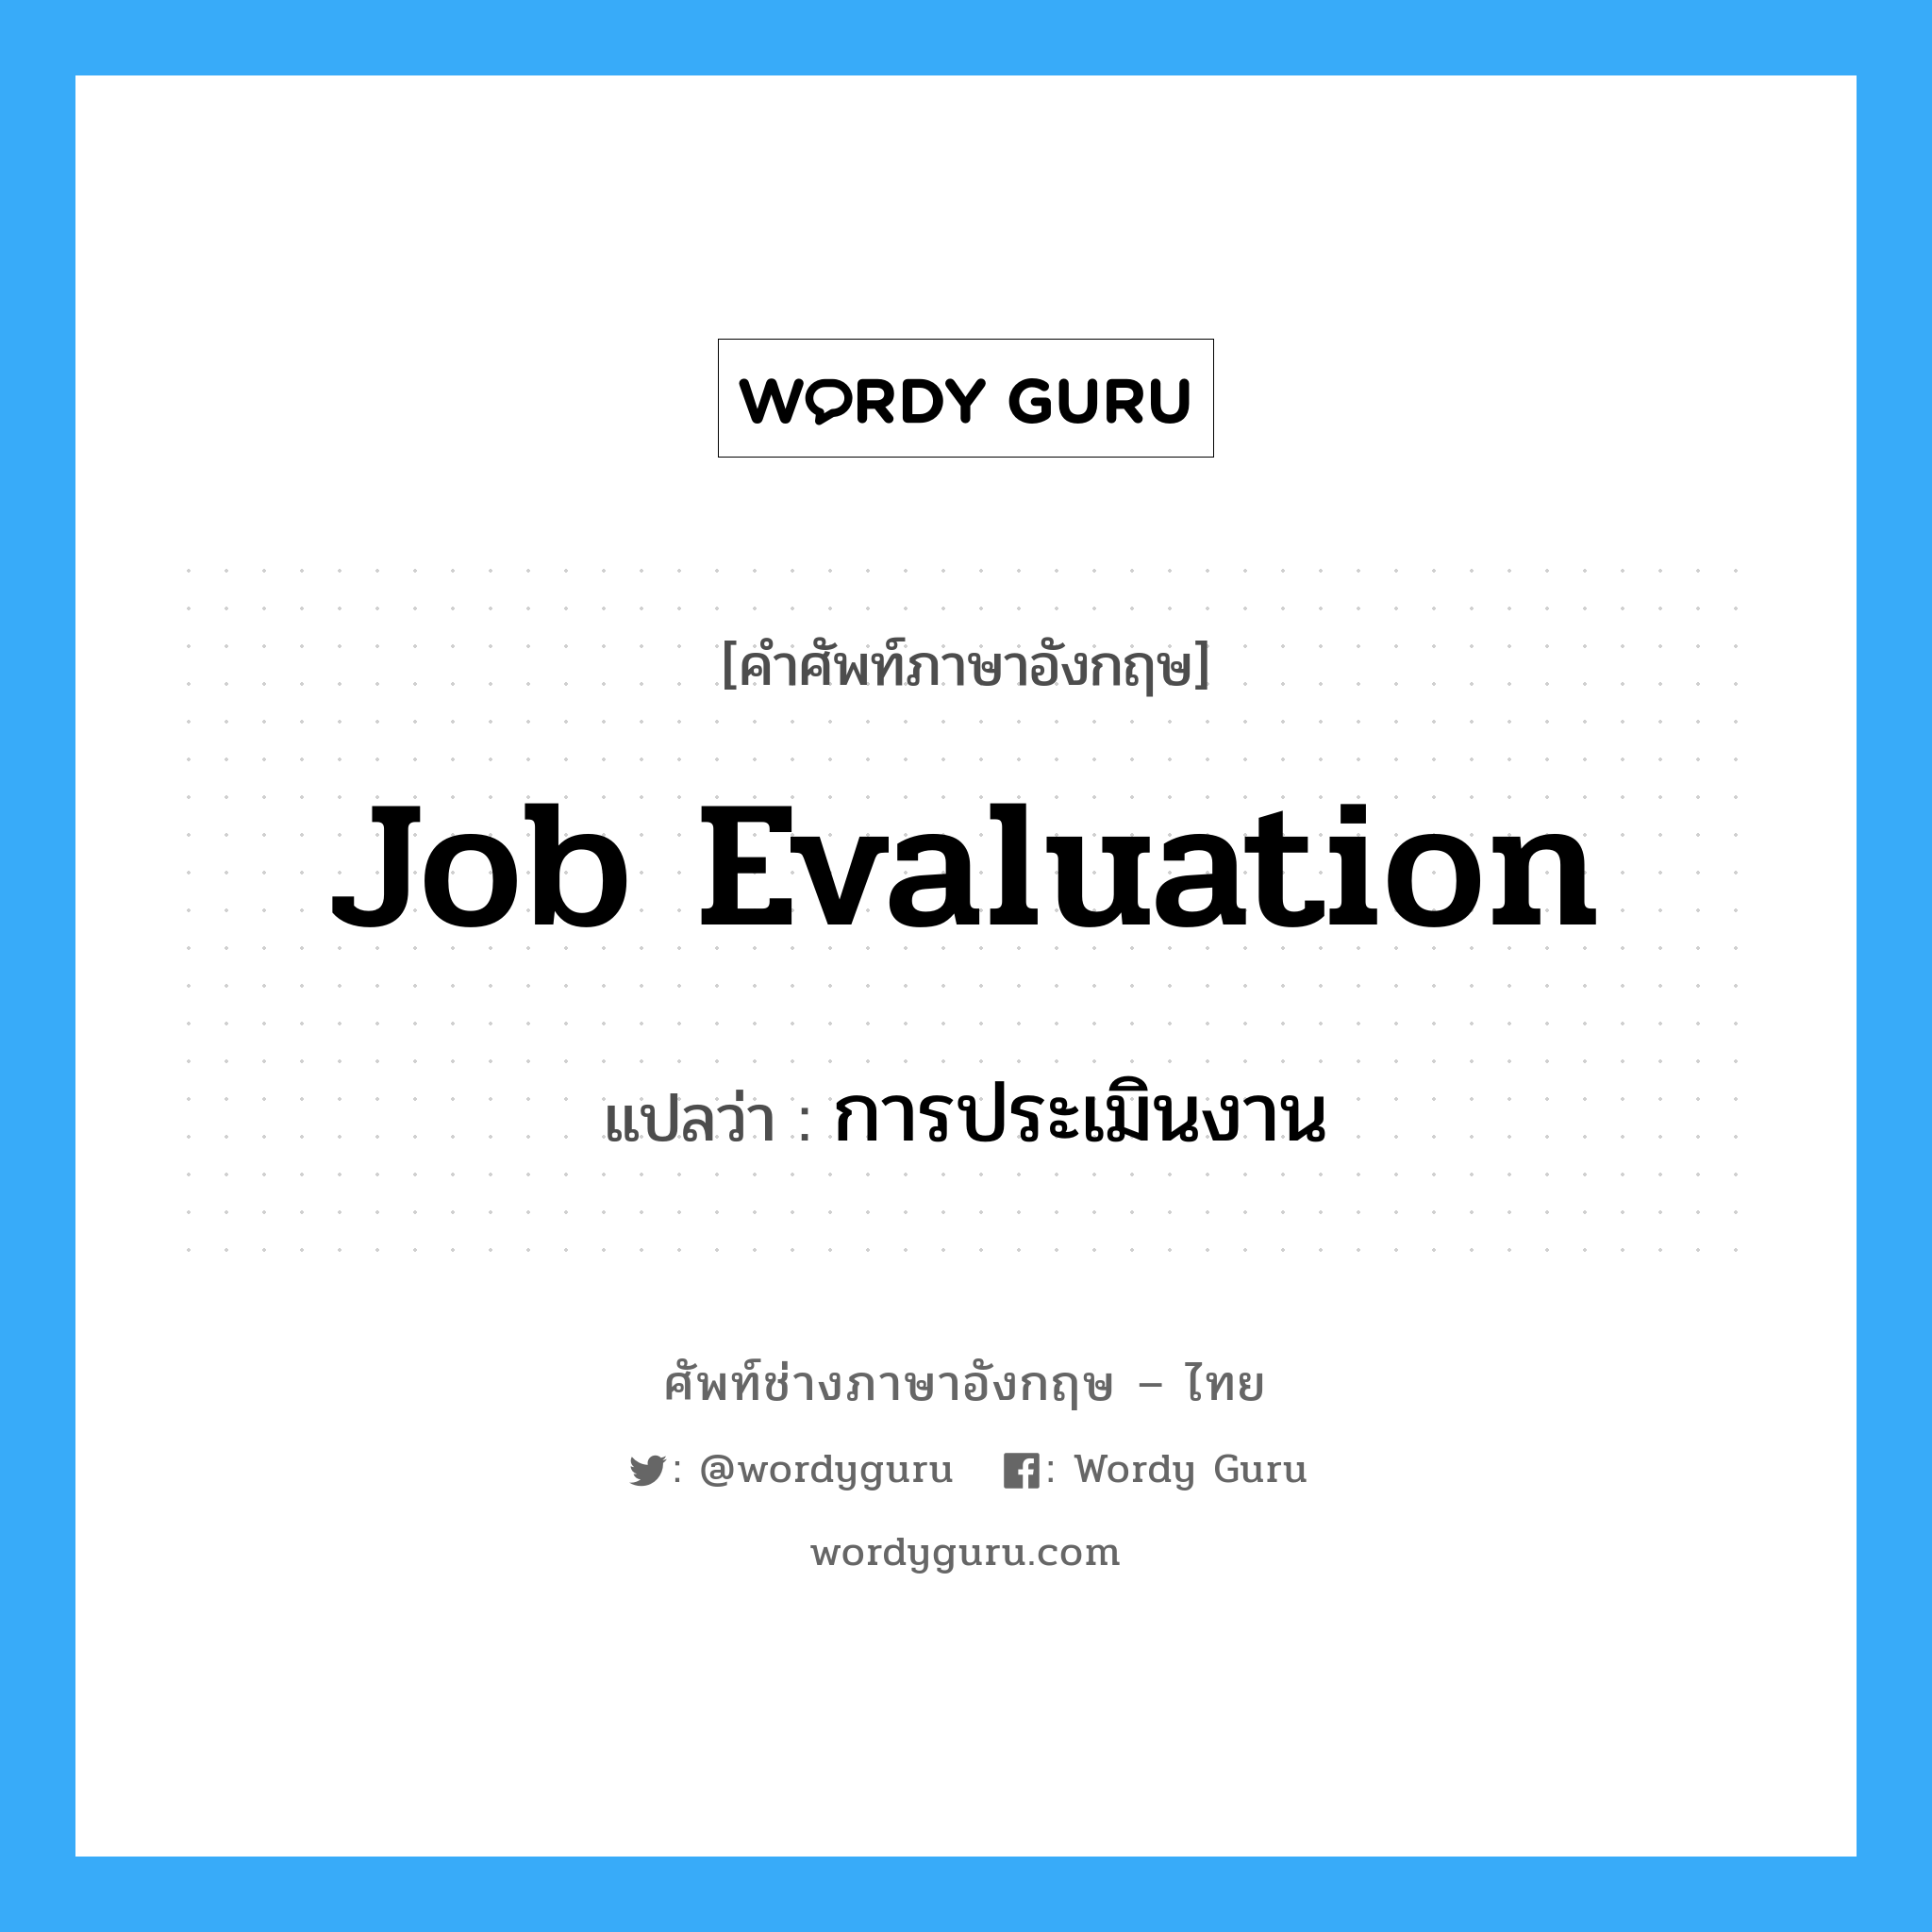 การประเมินงาน ภาษาอังกฤษ?, คำศัพท์ช่างภาษาอังกฤษ - ไทย การประเมินงาน คำศัพท์ภาษาอังกฤษ การประเมินงาน แปลว่า Job Evaluation